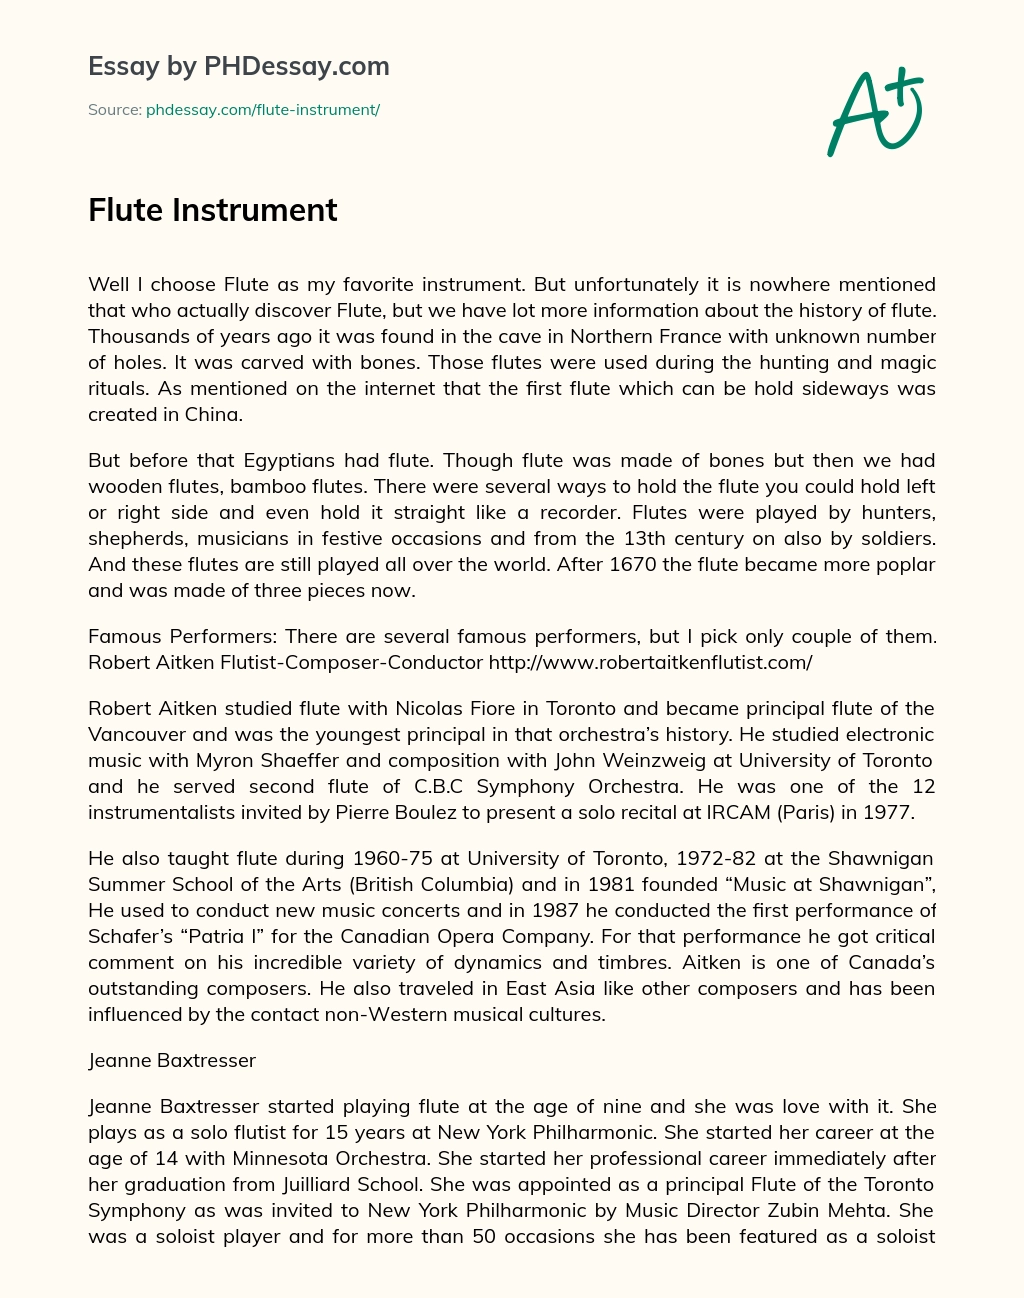 Flute Instrument essay